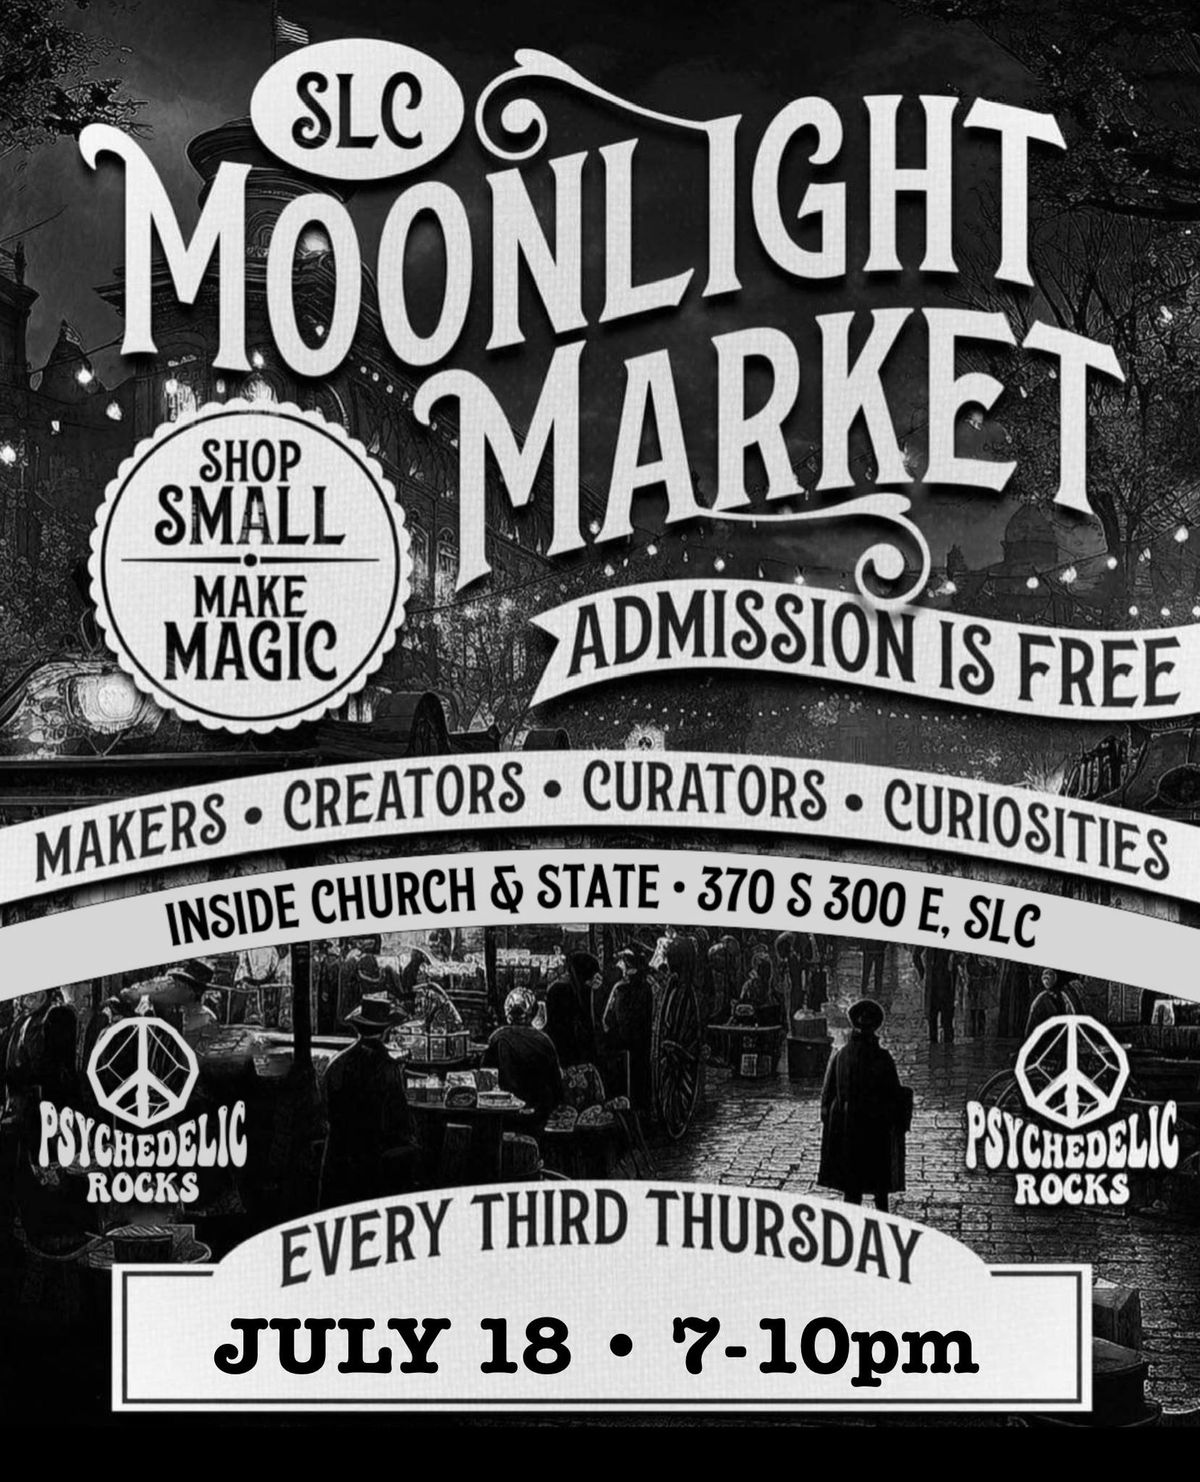 Moonlight Market SLC